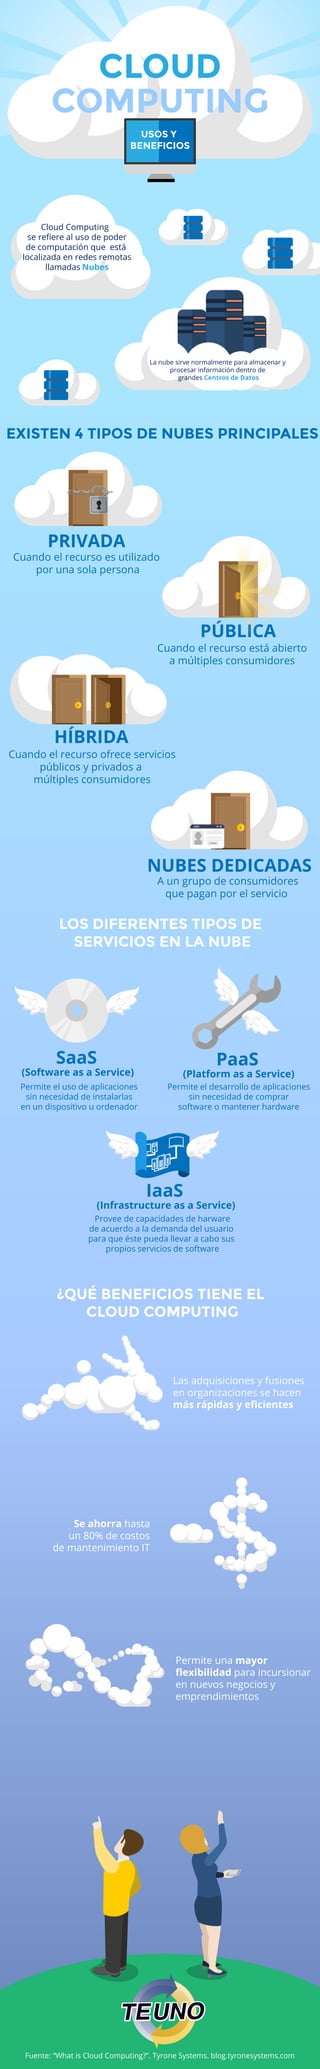 Fuente: “What is Cloud Computing?”. Tyrone Systems. blog.tyronesystems.com
CLOUD
COMPUTING
EXISTEN 4 TIPOS DE NUBES PRINCIPALES
LOS DIFERENTES TIPOS DE
SERVICIOS EN LA NUBE
¿QUÉ BENEFICIOS TIENE EL
CLOUD COMPUTING
PRIVADA
PÚBLICA
HÍBRIDA
SaaS
(Software as a Service)
PaaS
(Platform as a Service)
IaaS
(Infrastructure as a Service)
NUBES DEDICADAS
Cloud Computing
se reﬁere al uso de poder
de computación que está
localizada en redes remotas
llamadas Nubes
La nube sirve normalmente para almacenar y
procesar información dentro de
grandes Centros de Datos
USOS Y
BENEFICIOS
Cuando el recurso es utilizado
por una sola persona
Cuando el recurso está abierto
a múltiples consumidores
Cuando el recurso ofrece servicios
públicos y privados a
múltiples consumidores
Permite el uso de aplicaciones
sin necesidad de instalarlas
en un dispositivo u ordenador
Permite el desarrollo de aplicaciones
sin necesidad de comprar
software o mantener hardware
Provee de capacidades de harware
de acuerdo a la demanda del usuario
para que éste pueda llevar a cabo sus
propios servicios de software
Las adquisiciones y fusiones
en organizaciones se hacen
más rápidas y eﬁcientes
Se ahorra hasta
un 80% de costos
de mantenimiento IT
Permite una mayor
ﬂexibilidad para incursionar
en nuevos negocios y
emprendimientos
A un grupo de consumidores
que pagan por el servicio
 